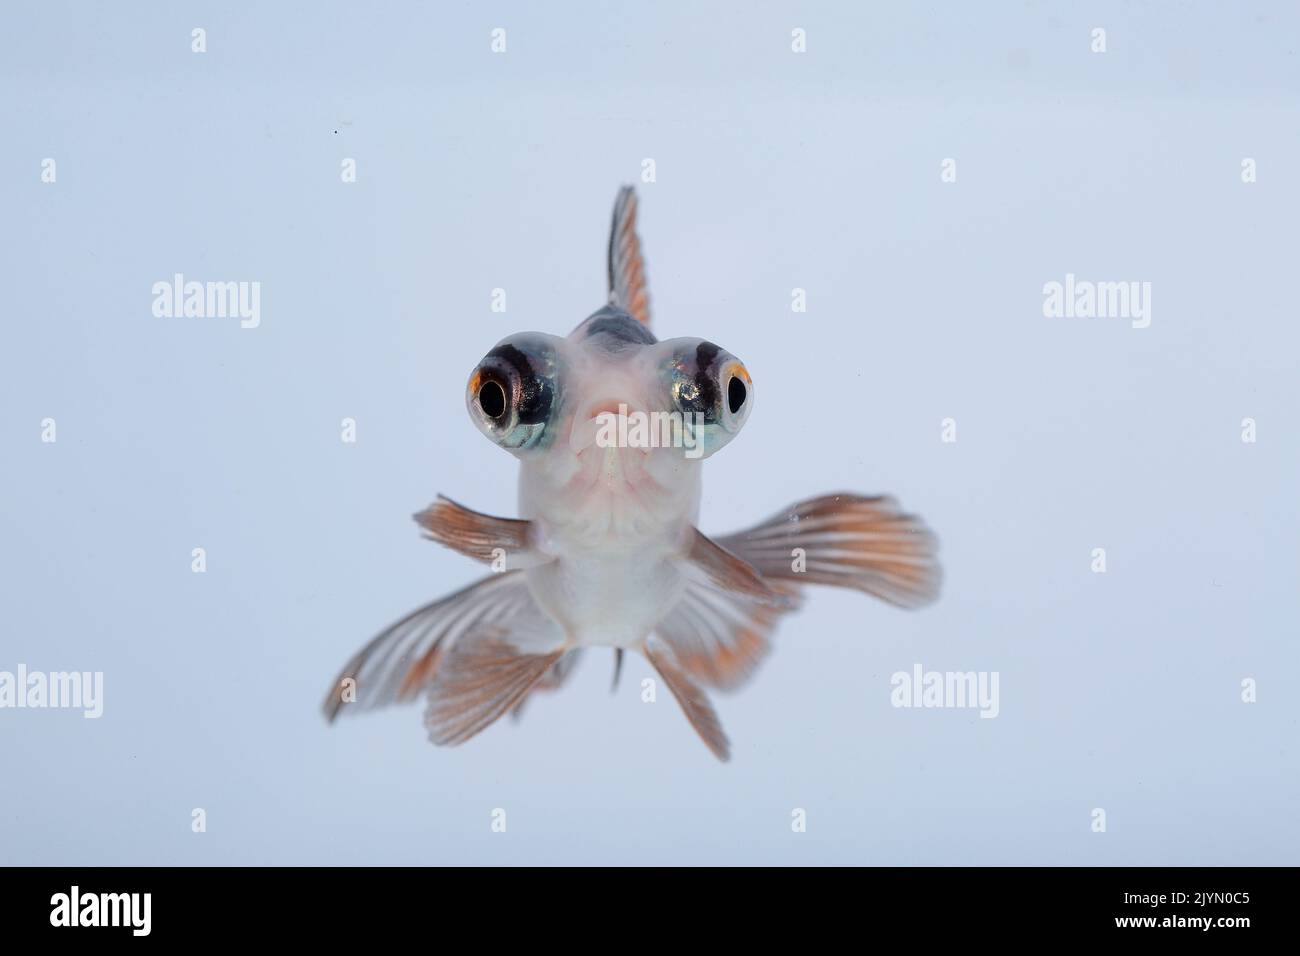 Panda eye sailfish (Carassius auratus). Close-up on white background Stock Photo